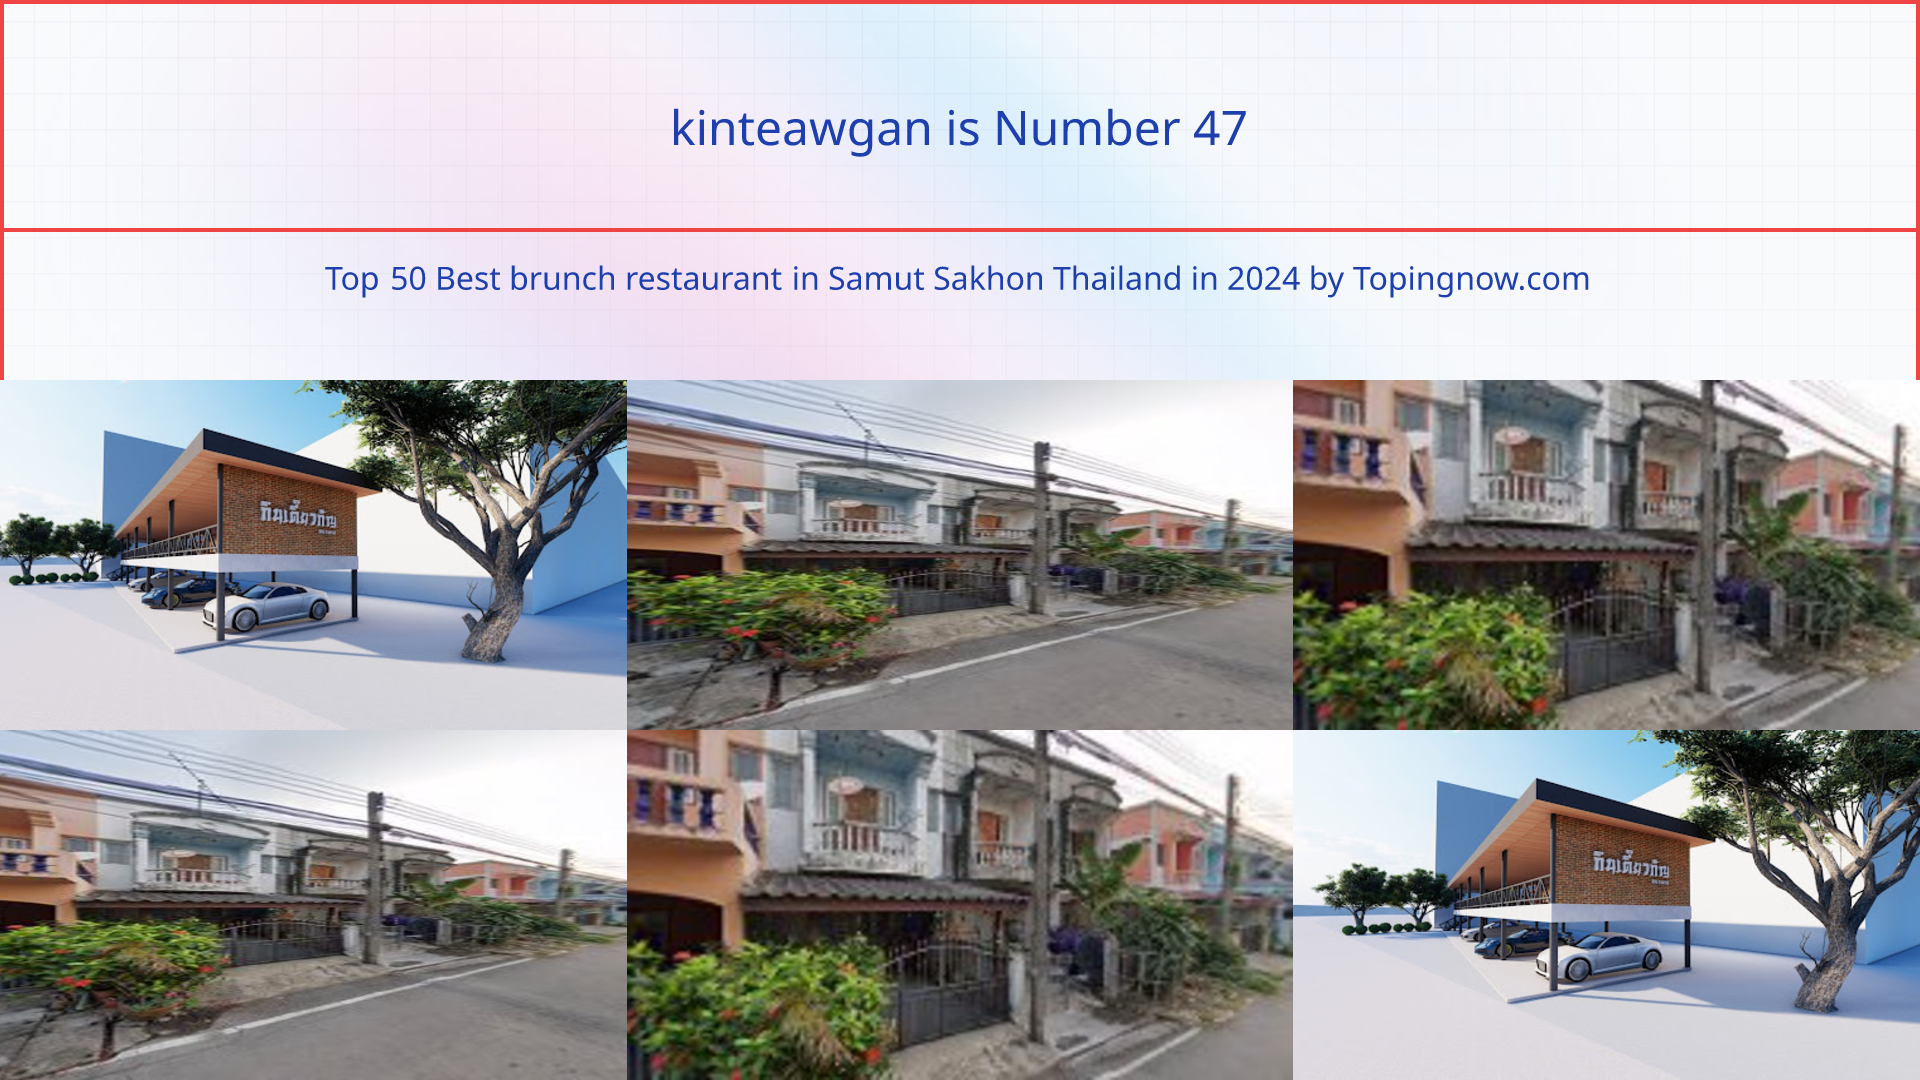 kinteawgan: Top 50 Best brunch restaurant in Samut Sakhon Thailand in 2024